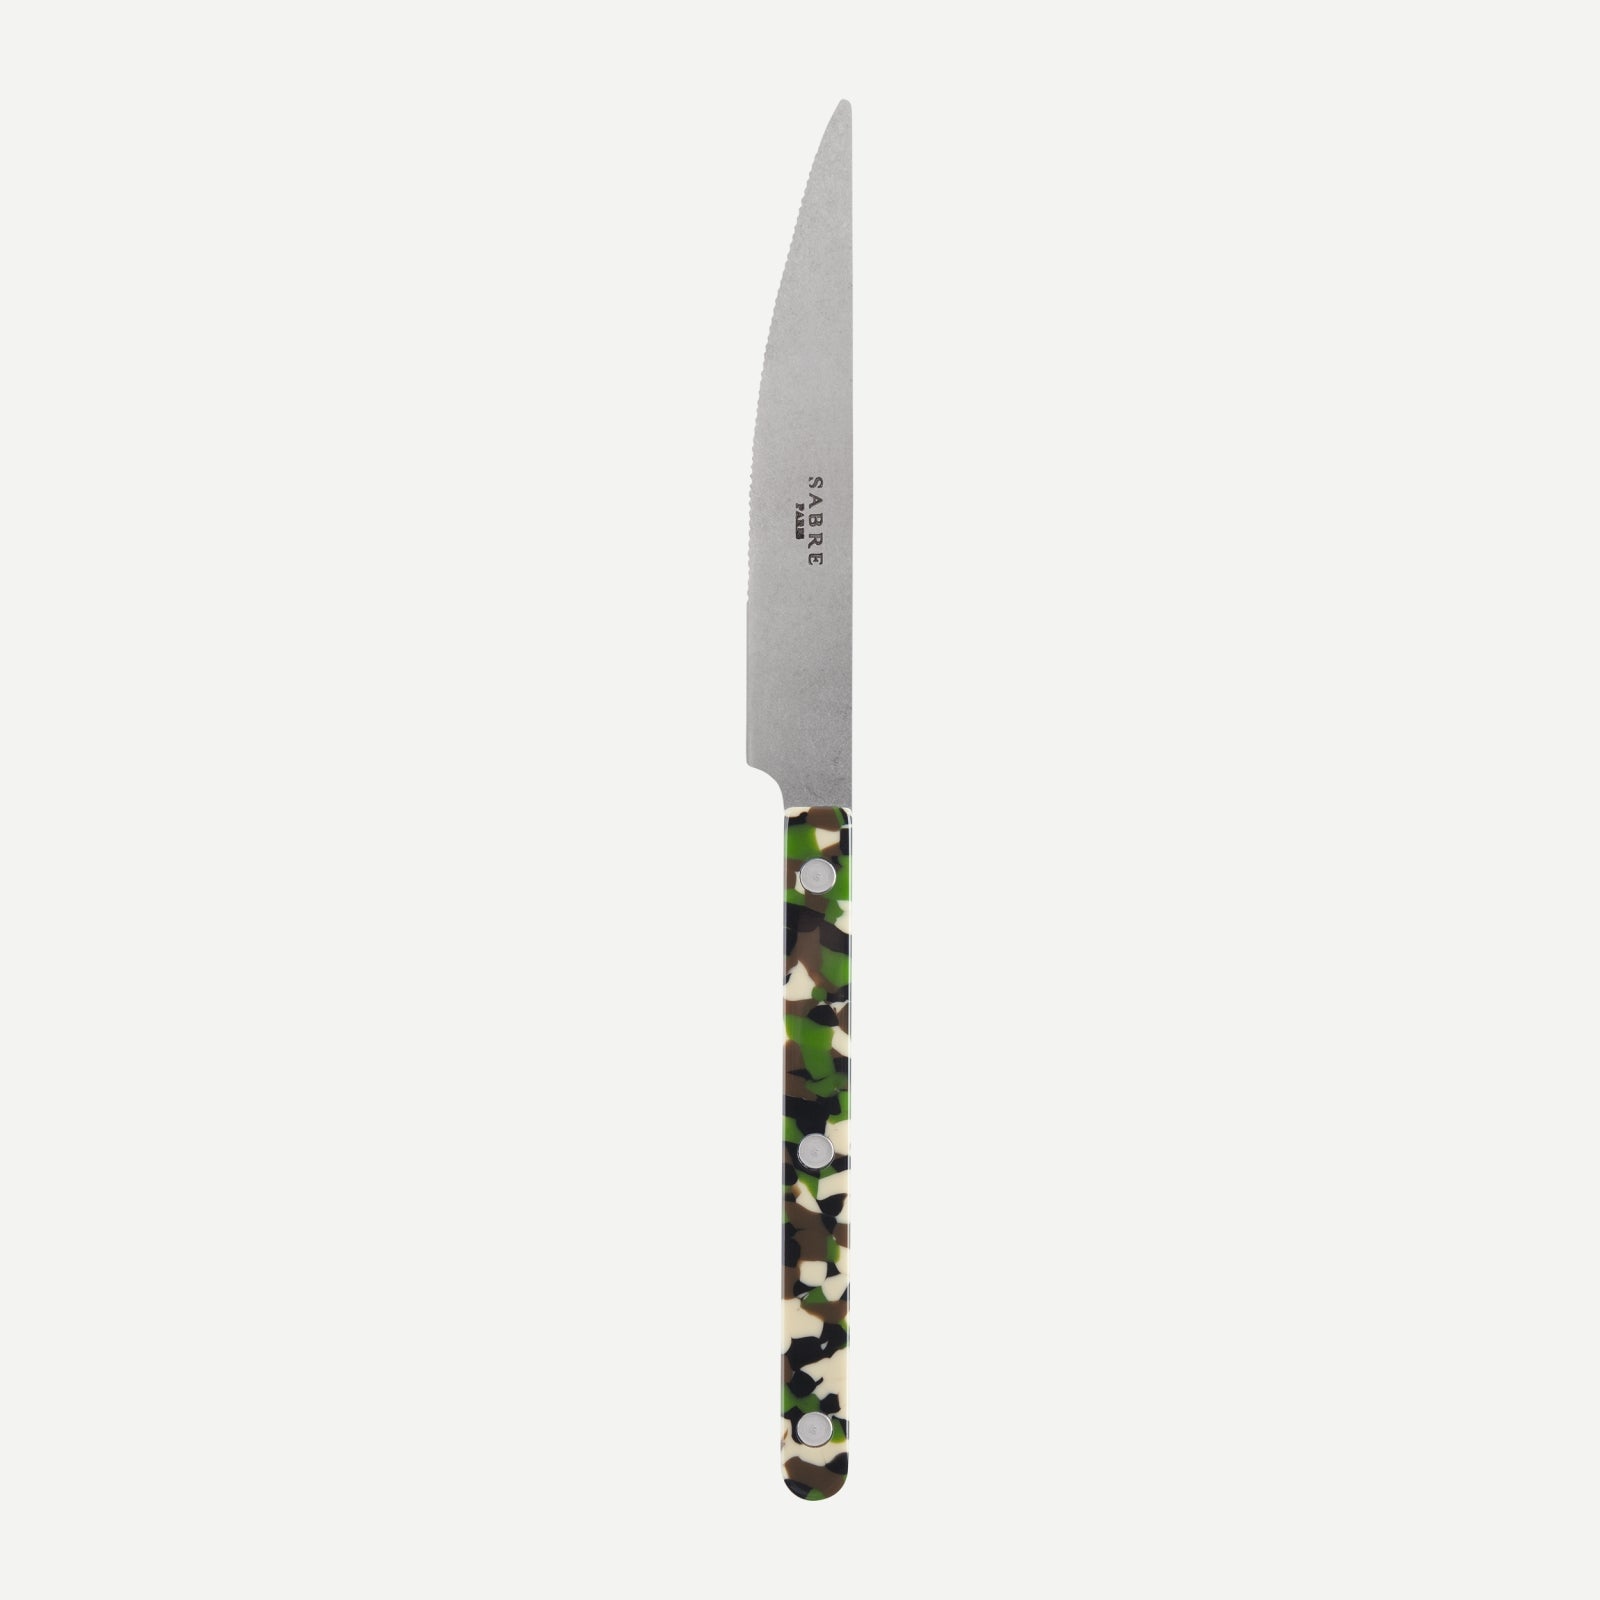 Dinner knife - Bistrot vintage Camouflage - Green